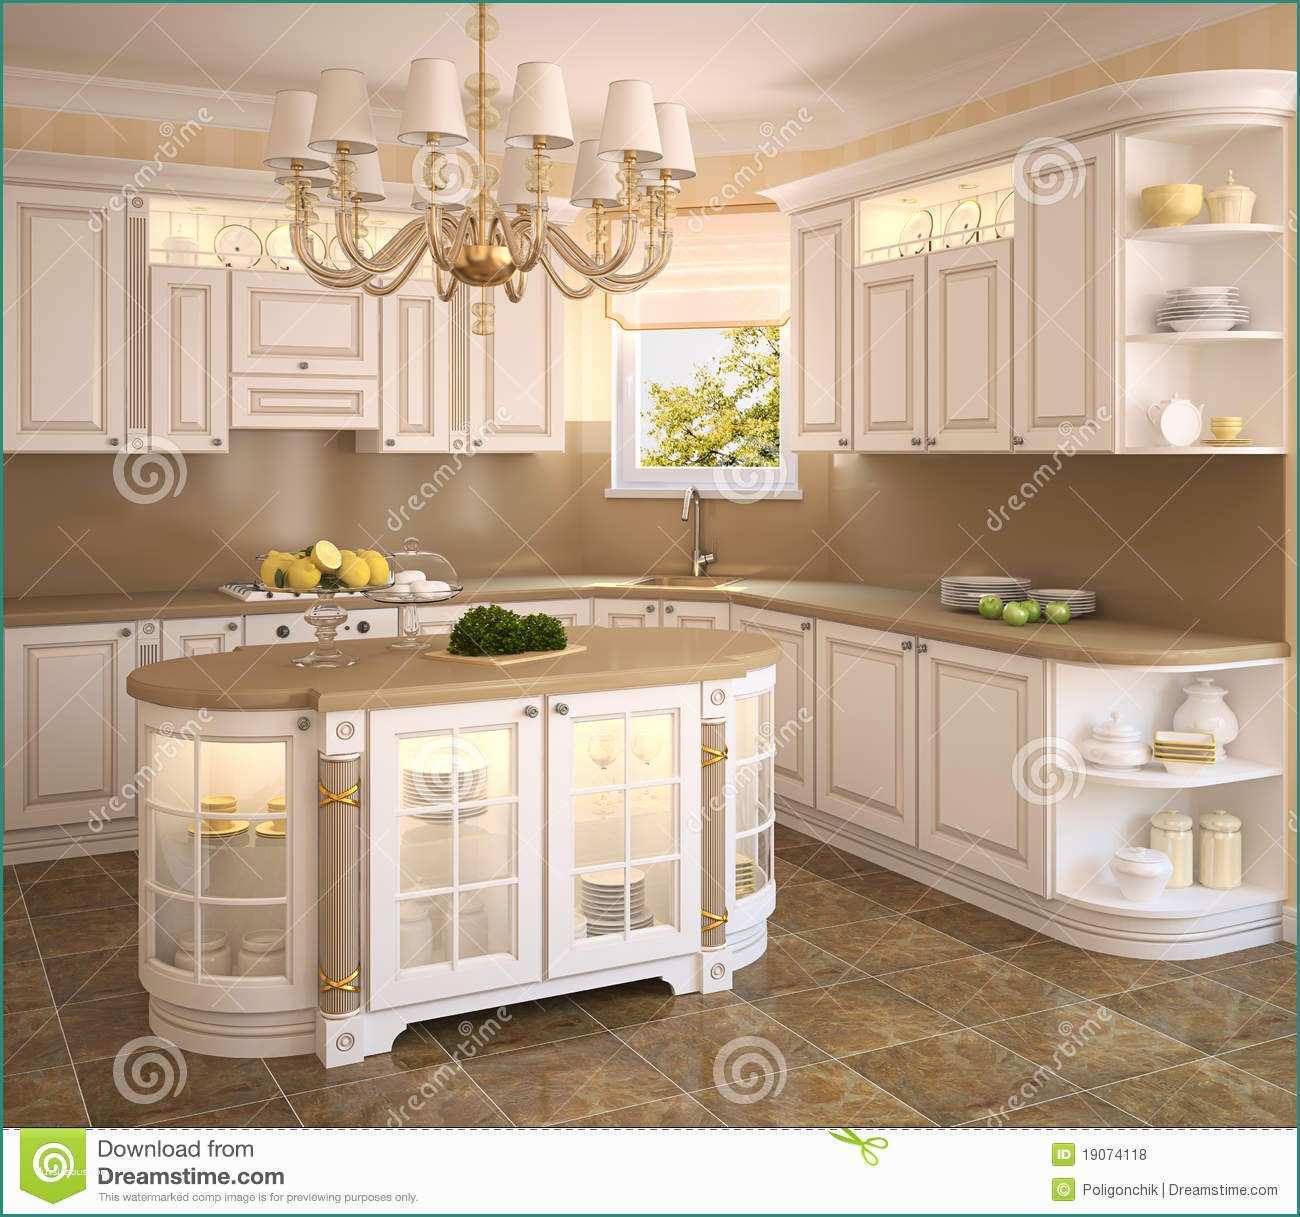 Cucina Bianca Classica E Cucina Bianca Classica Illustrazione Di Stock Immagine